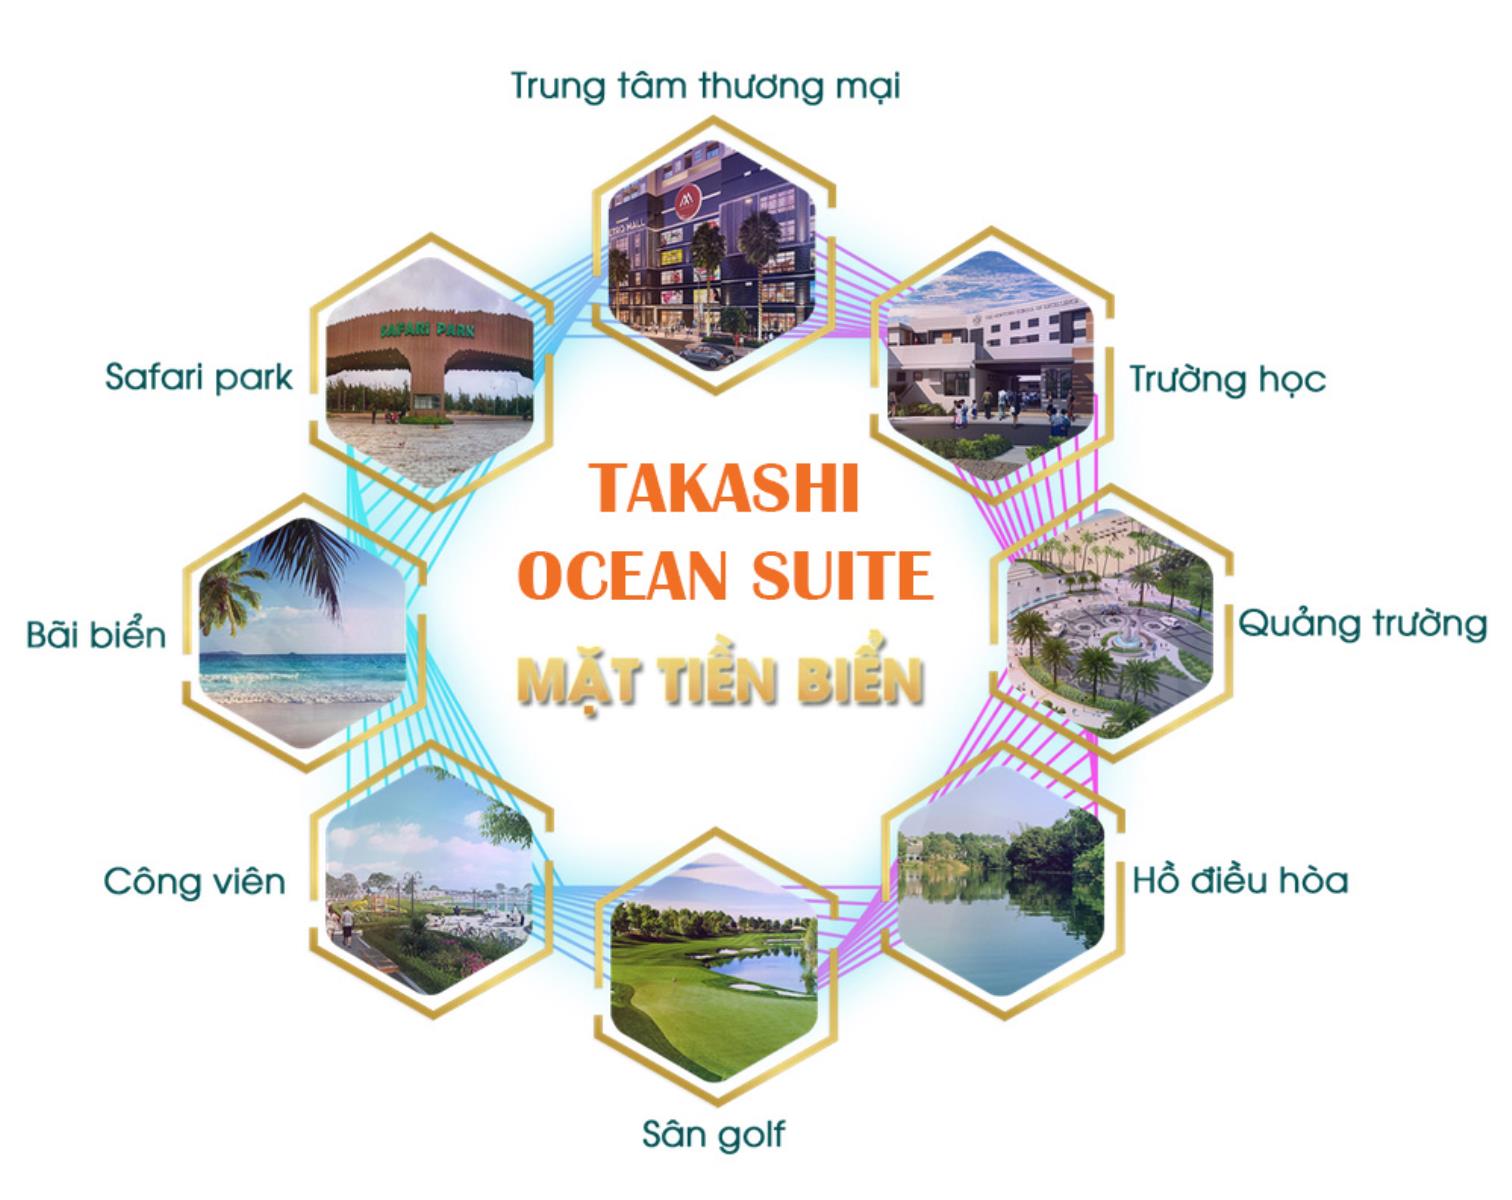 Takashi Ocean Suites , Căn Hộ Thương Mại Ven biển chỉ với 35tr/m2 chi tiết: 5